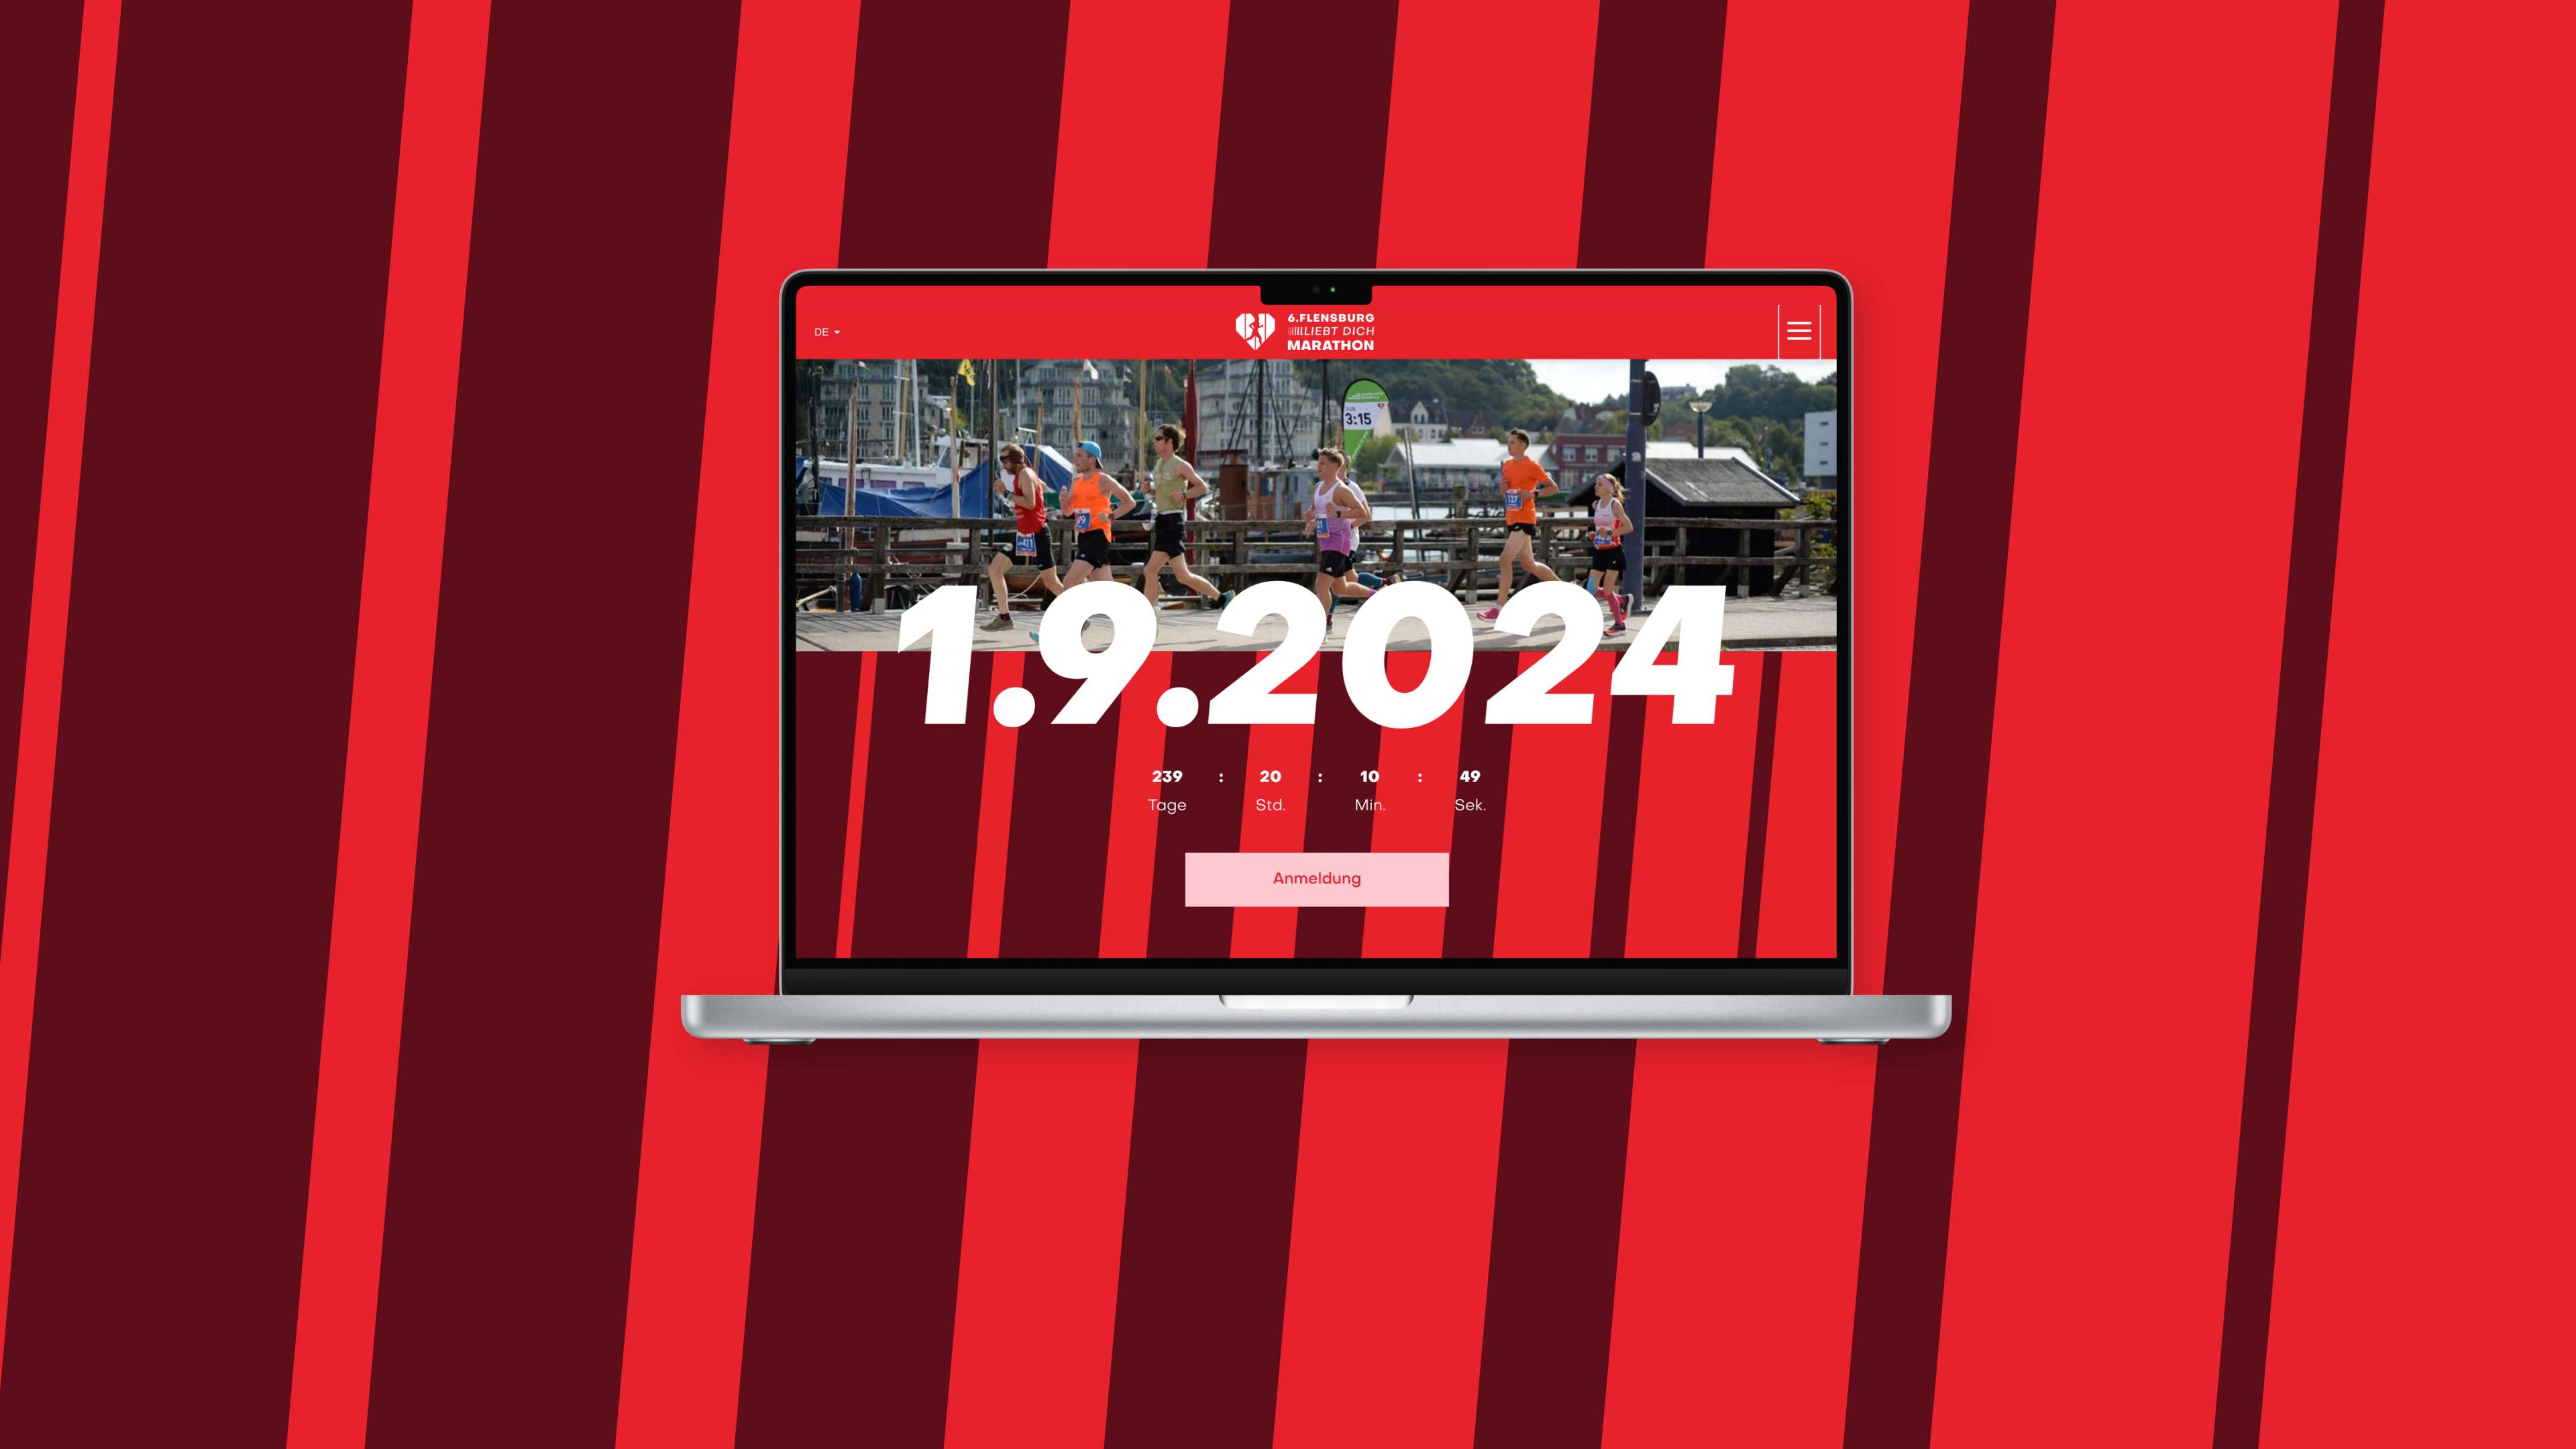 Am 1.9.2024 findet der nächste Flensburger Marathon statt